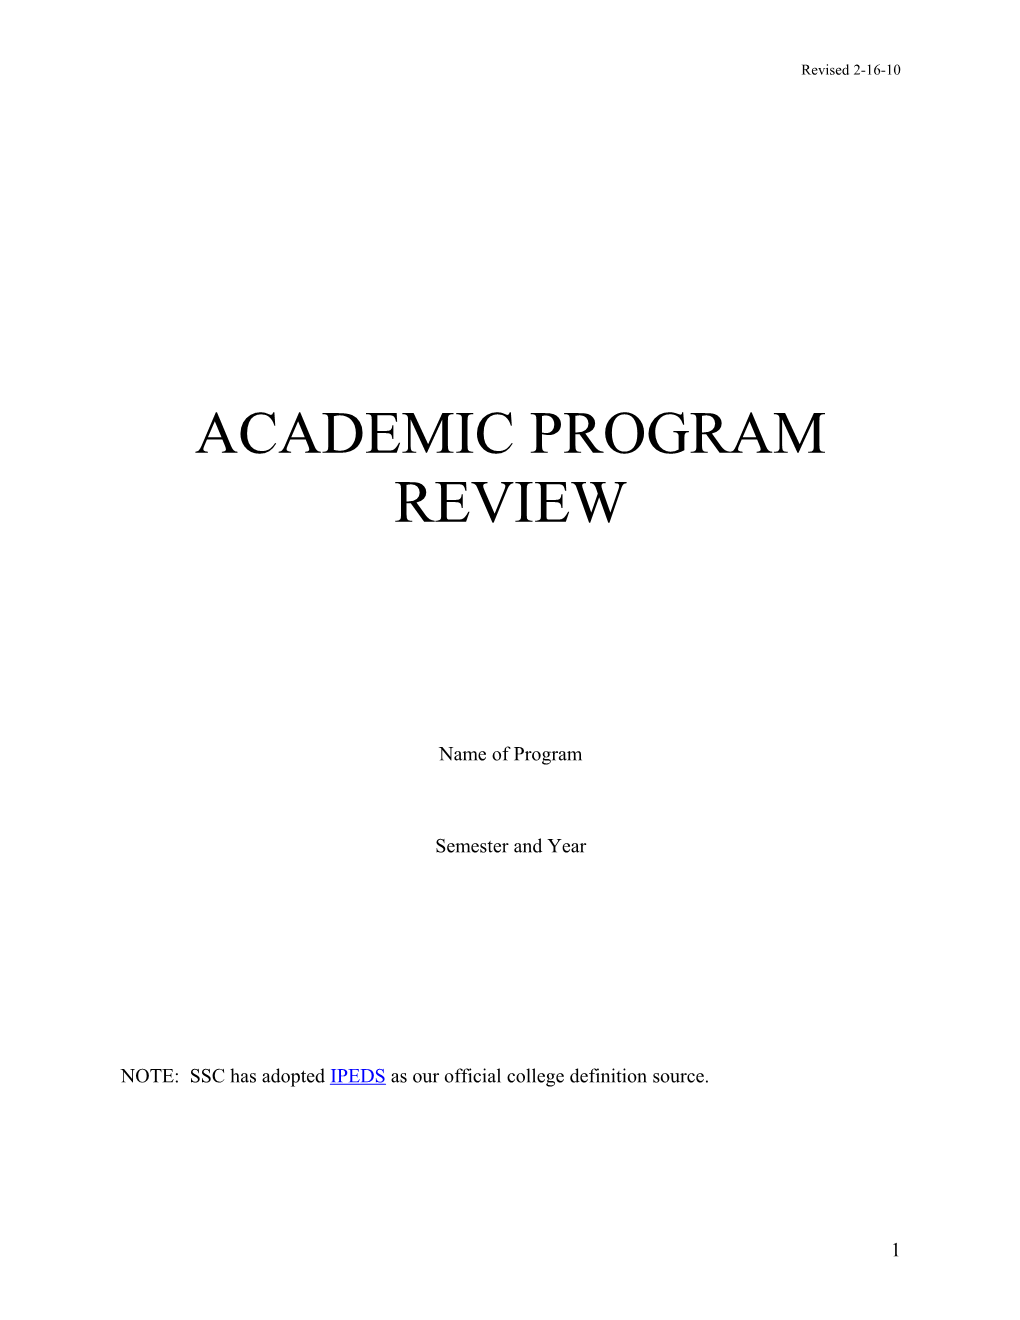 Academic Program Review